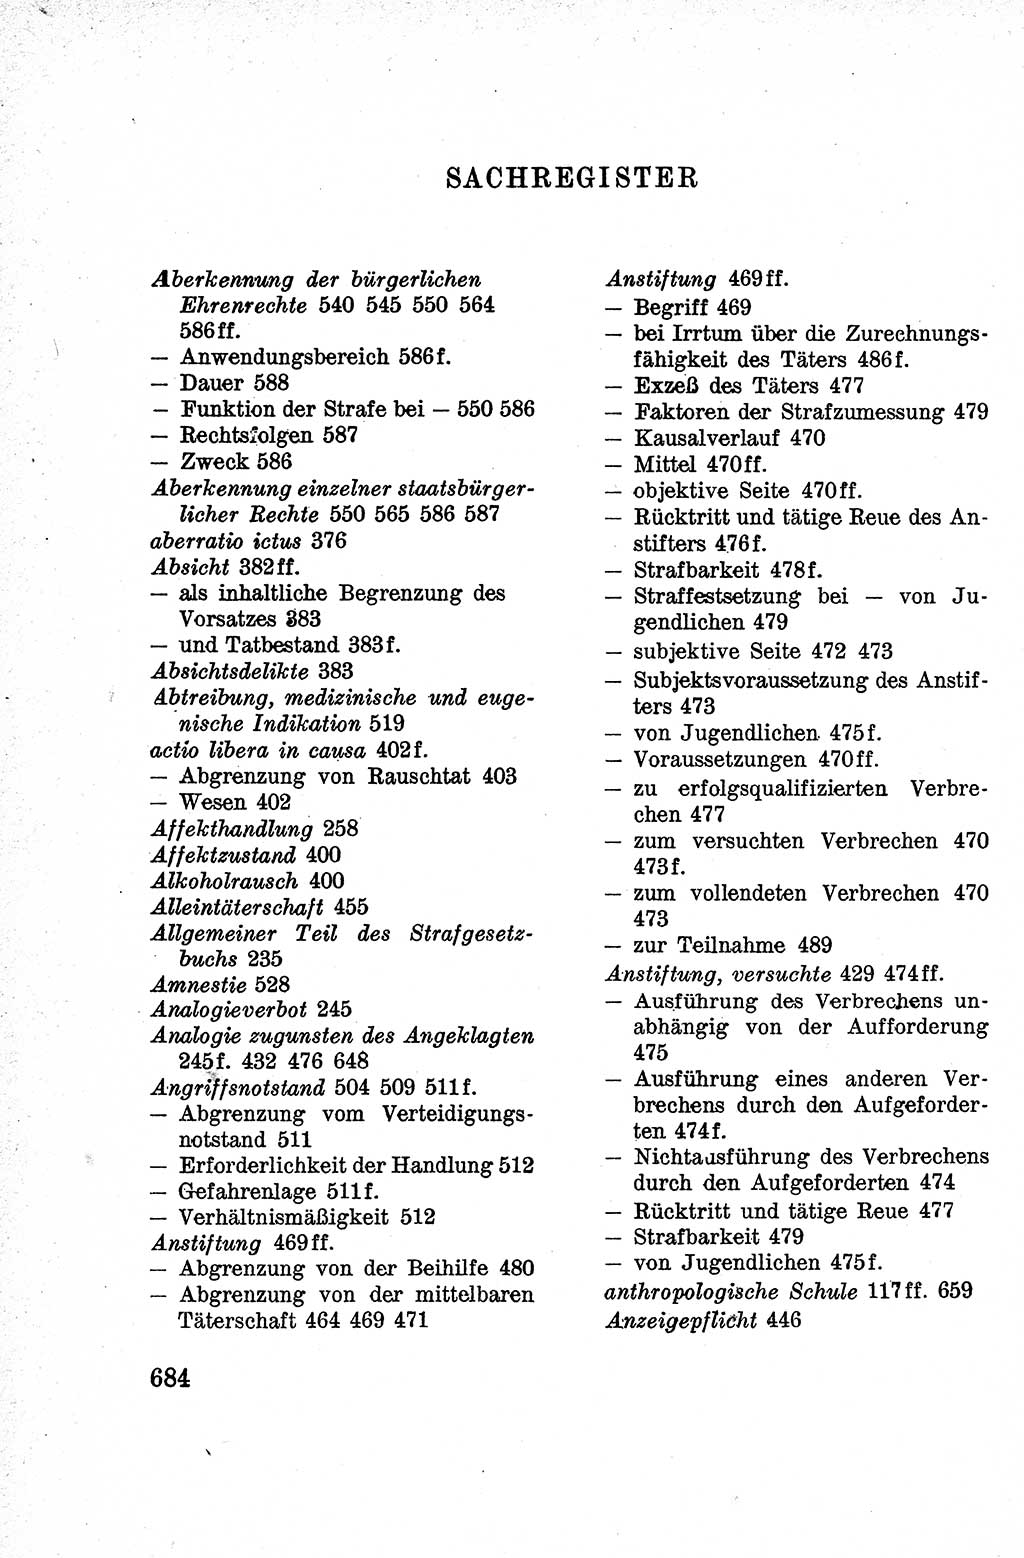 Lehrbuch des Strafrechts der Deutschen Demokratischen Republik (DDR), Allgemeiner Teil 1959, Seite 684 (Lb. Strafr. DDR AT 1959, S. 684)